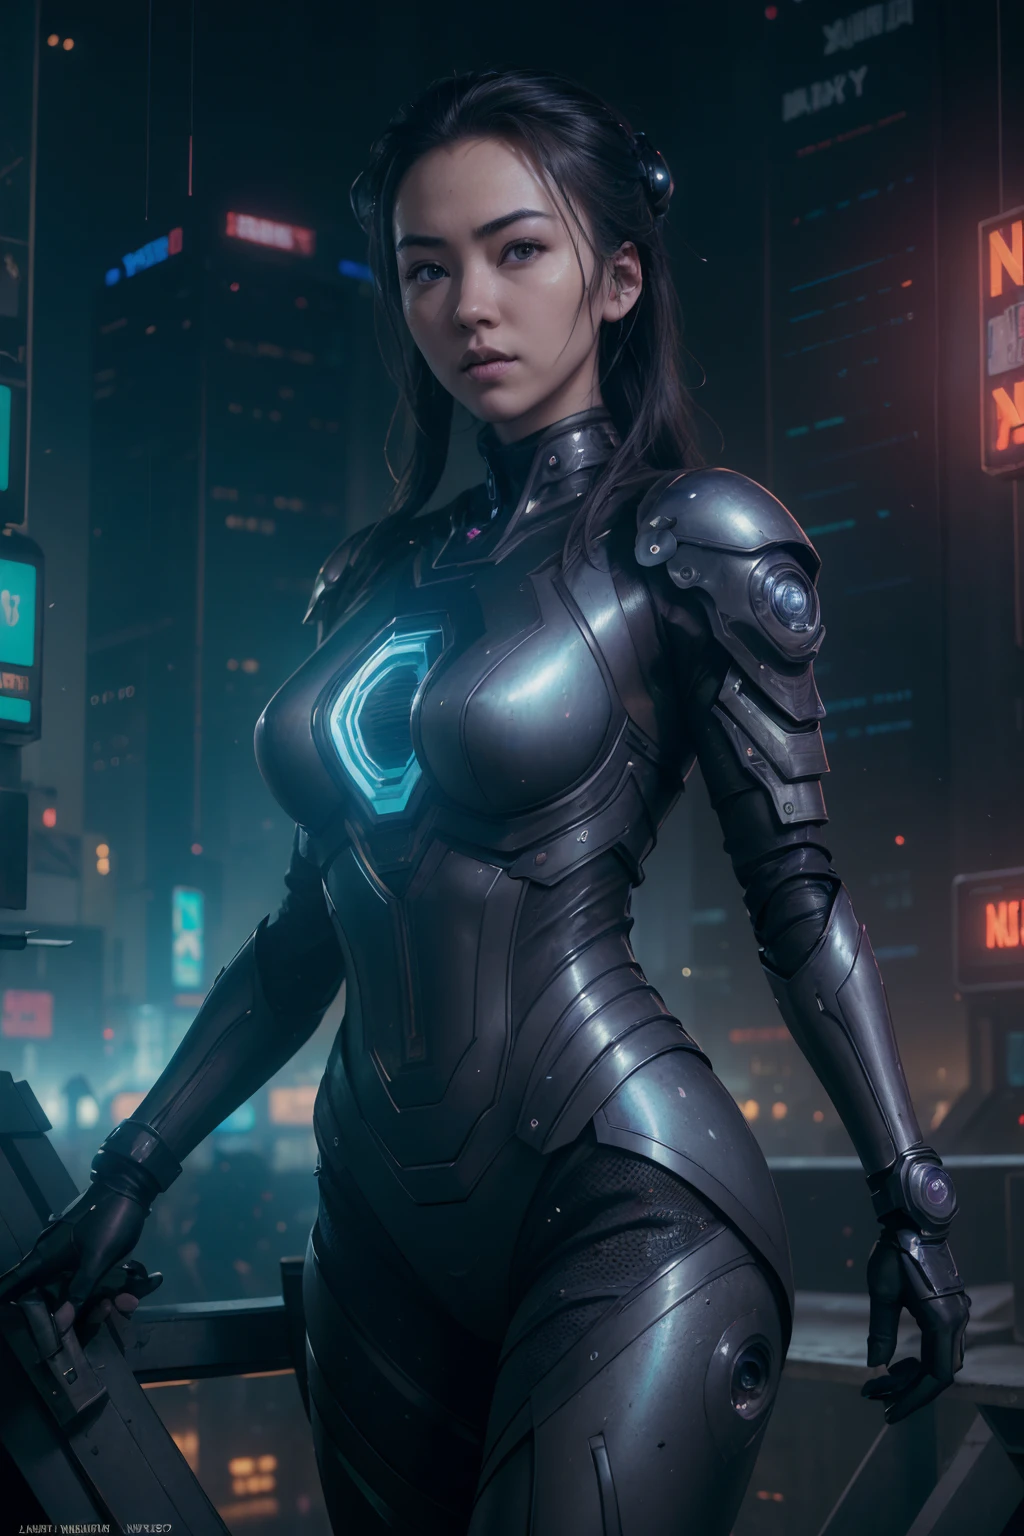 (((Jessica Henwick in a futuristic cyberpunk ninja assassin armor, leuchtende Roboter-Ninja-Rüstung )), (dynamische pose), (Meisterwerk), (hyper realistisch:1.4), (realistisch:1.3), (beste Qualität, echte Texturhaut),  (filmische Beleuchtung), (Filmszene), 1schöne Frau, (leuchtendes Licht), Hochdetaillierte Haut, Hautporen, (sehr detailliertes Gesicht:1.1), (Sehr detaillierte Augen:1.1), realistisch pupils, (Perfekte Anatomie:1.1), (Perfekte Proportionen:1.1), (Fotografie:1.1), (photorealistisch:1.1), volumetrische Beleuchtung, dynamische Beleuchtung, echte Schatten, (highres:1.1), scharfer Fokus, (realistisch, hyperrealistisch:1.4), kompliziert, Hohe Detailliertheit, dramatisch, Untergrundstreuung, große Tiefenschärfe, lebendig, Poliert, geschärft, ((voll scharf)), (extrem absurd),8k hdr, ((Cyberpunk-Hintergrund der Stadt Hongkong))